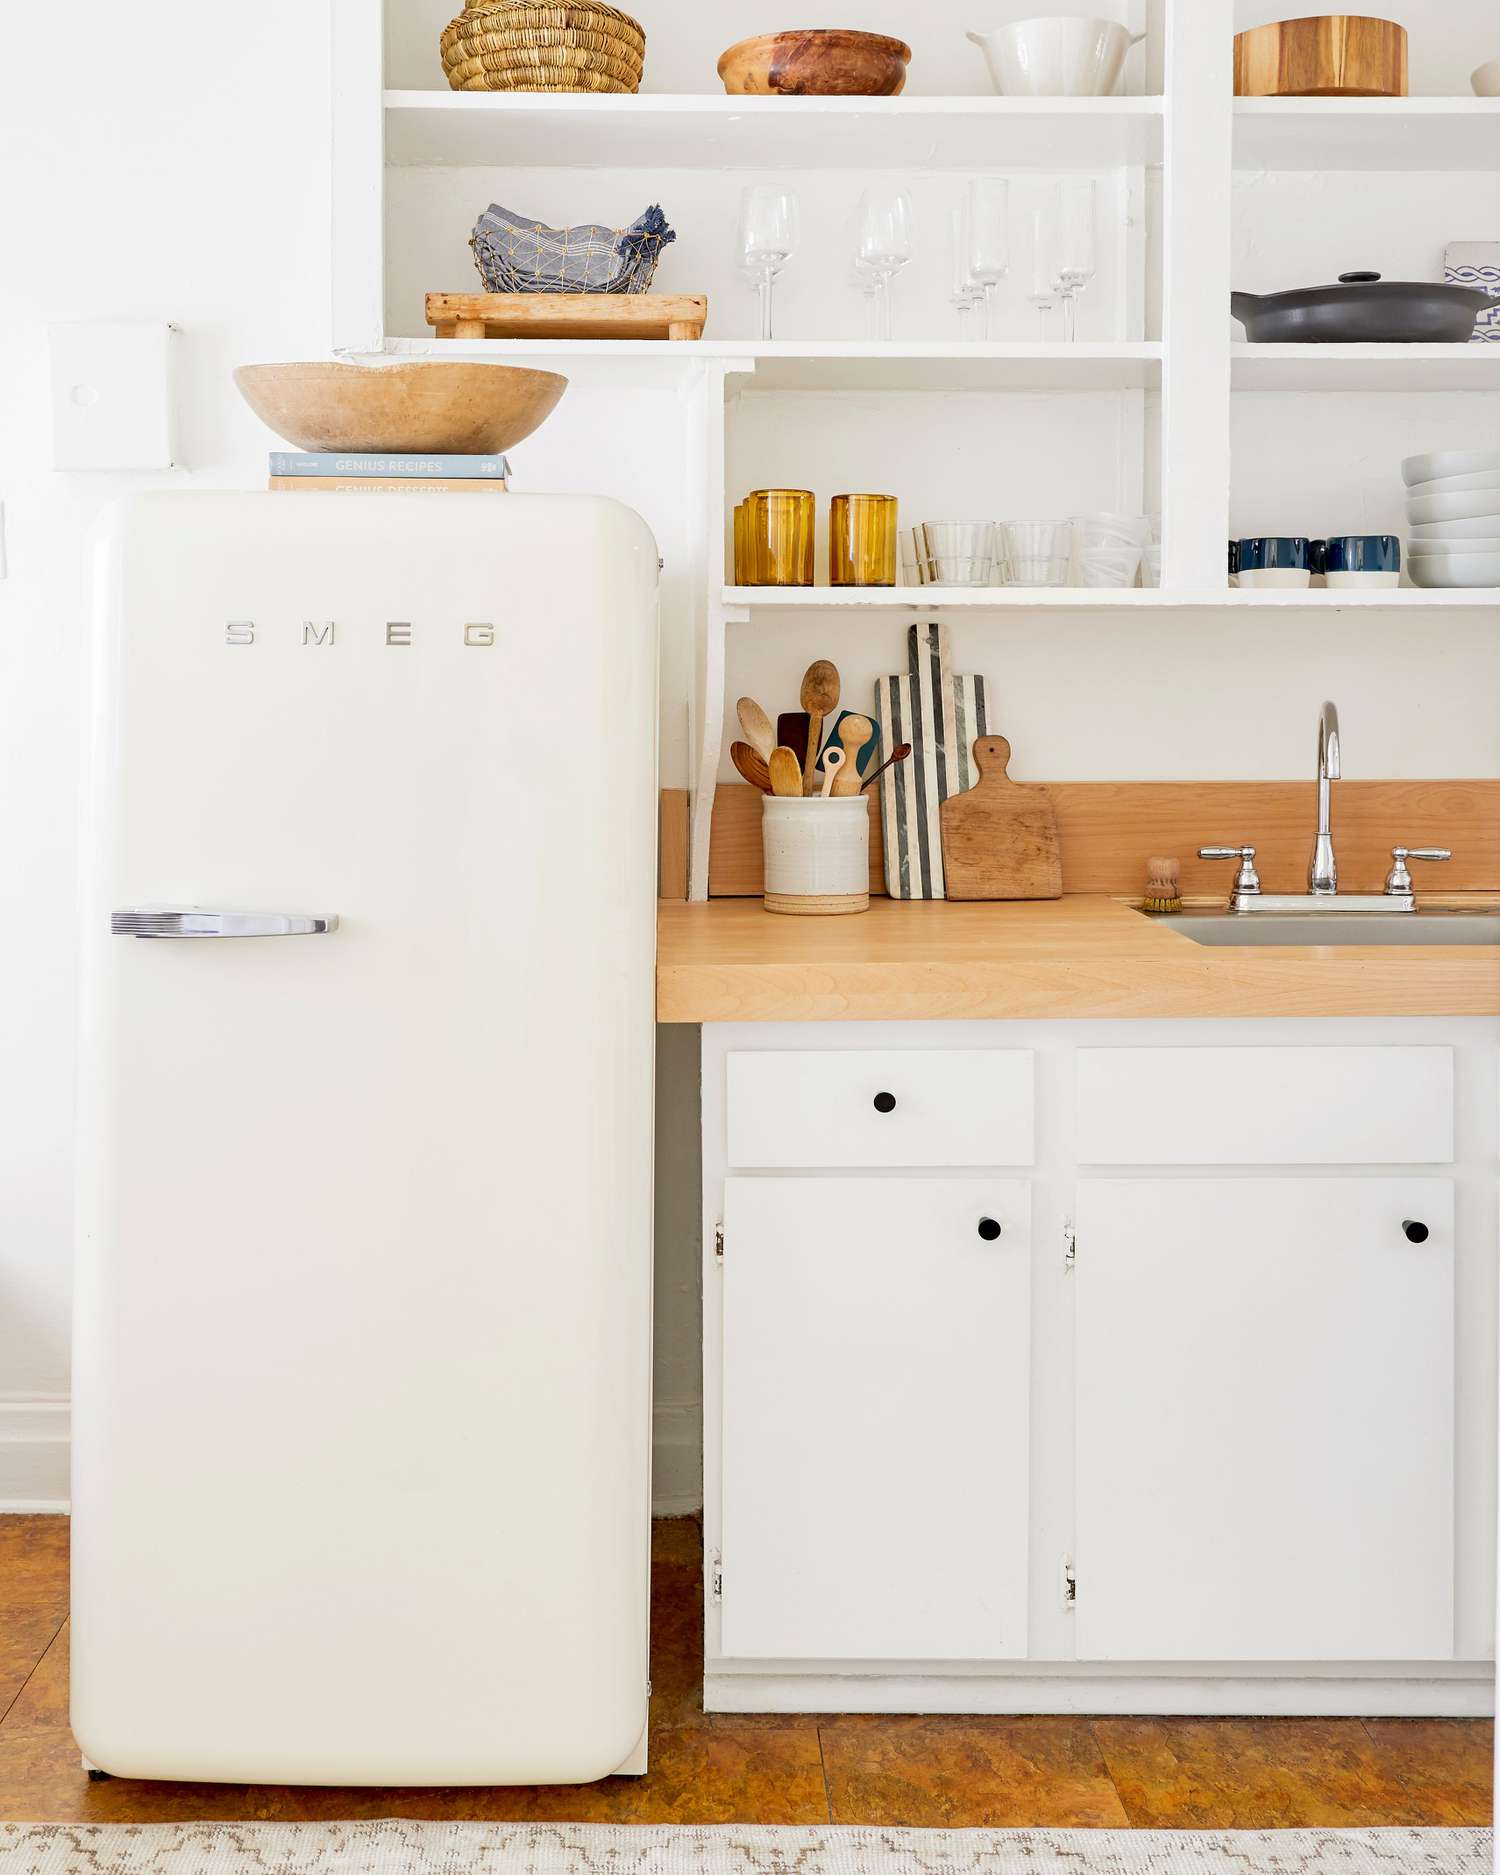 cozinha rústica com geladeira smeg moderna de meados do século